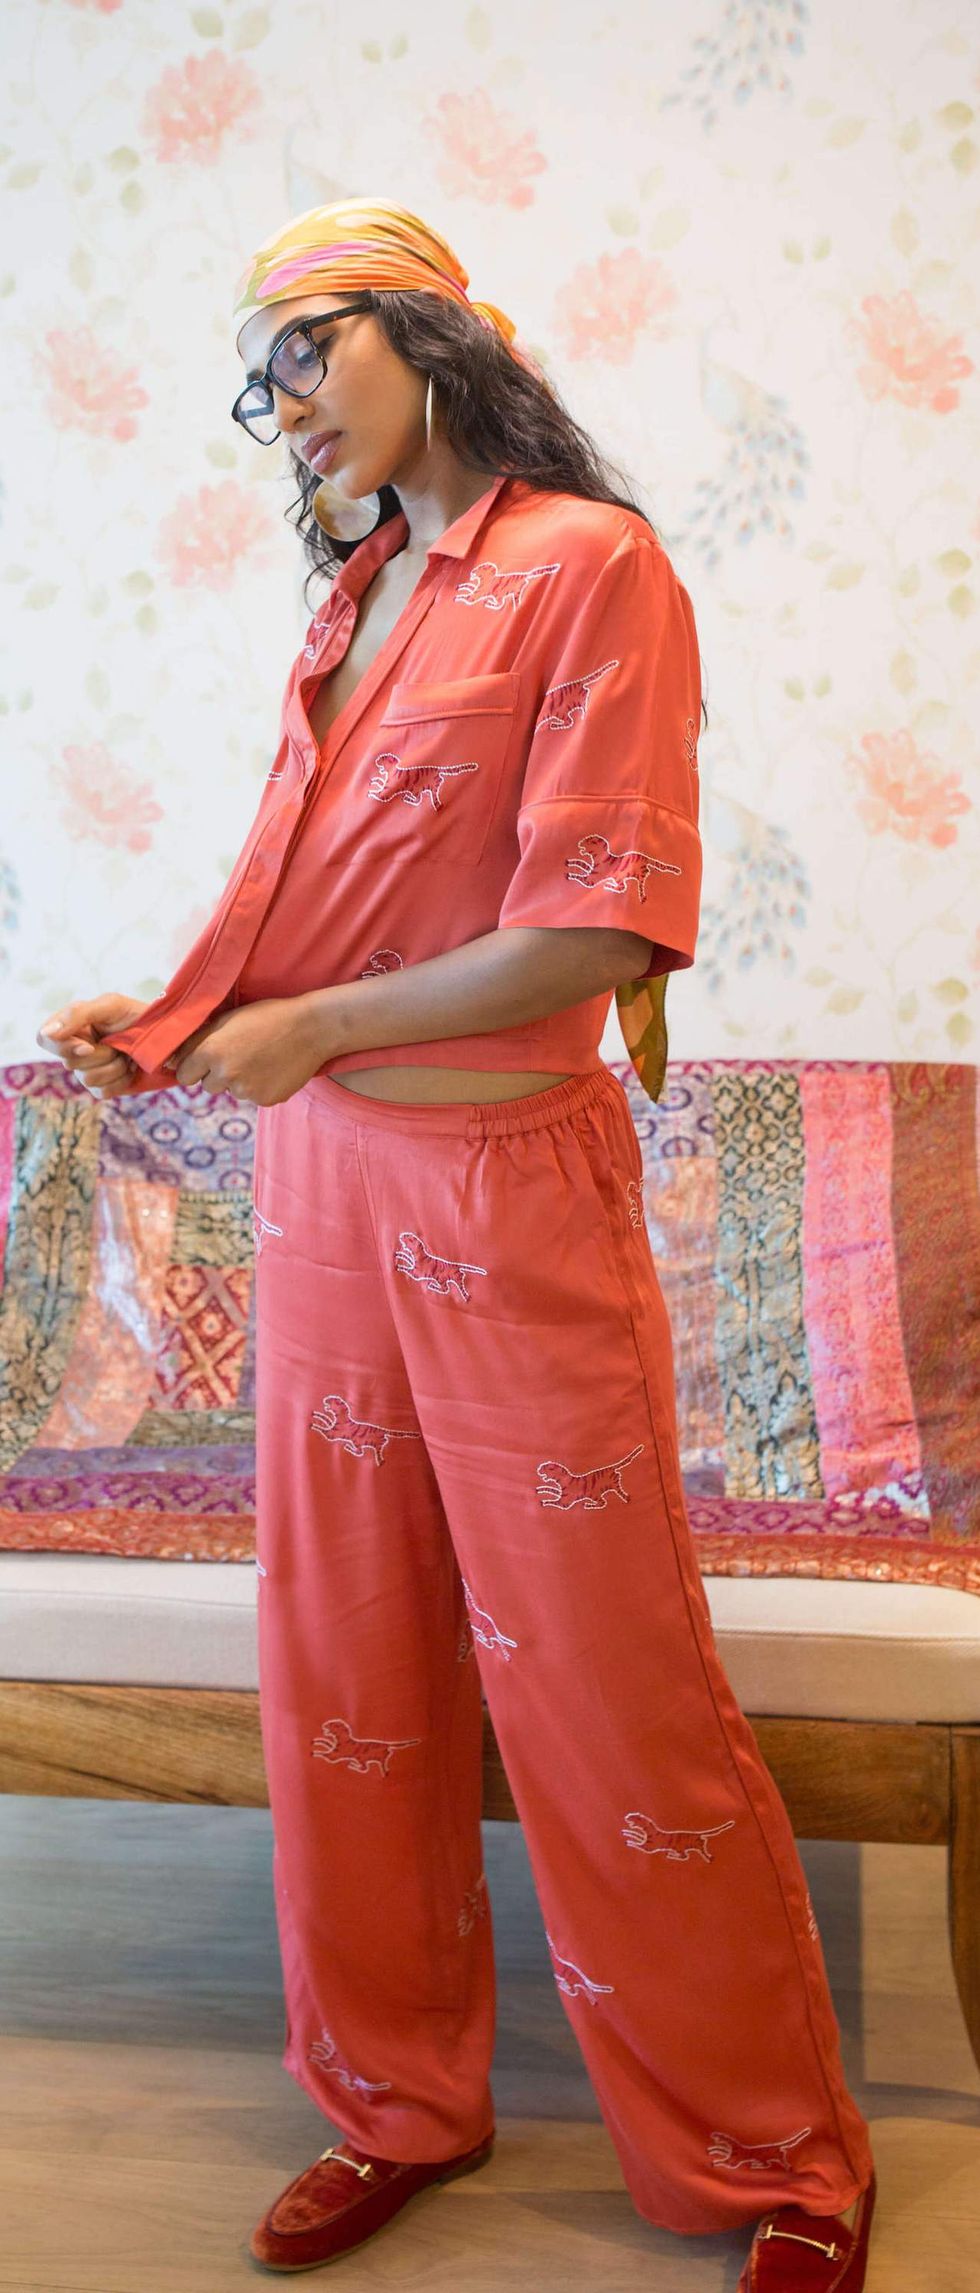 Cute Women's Sleepwear  Shop Chic Pajamas for Women - Lulus